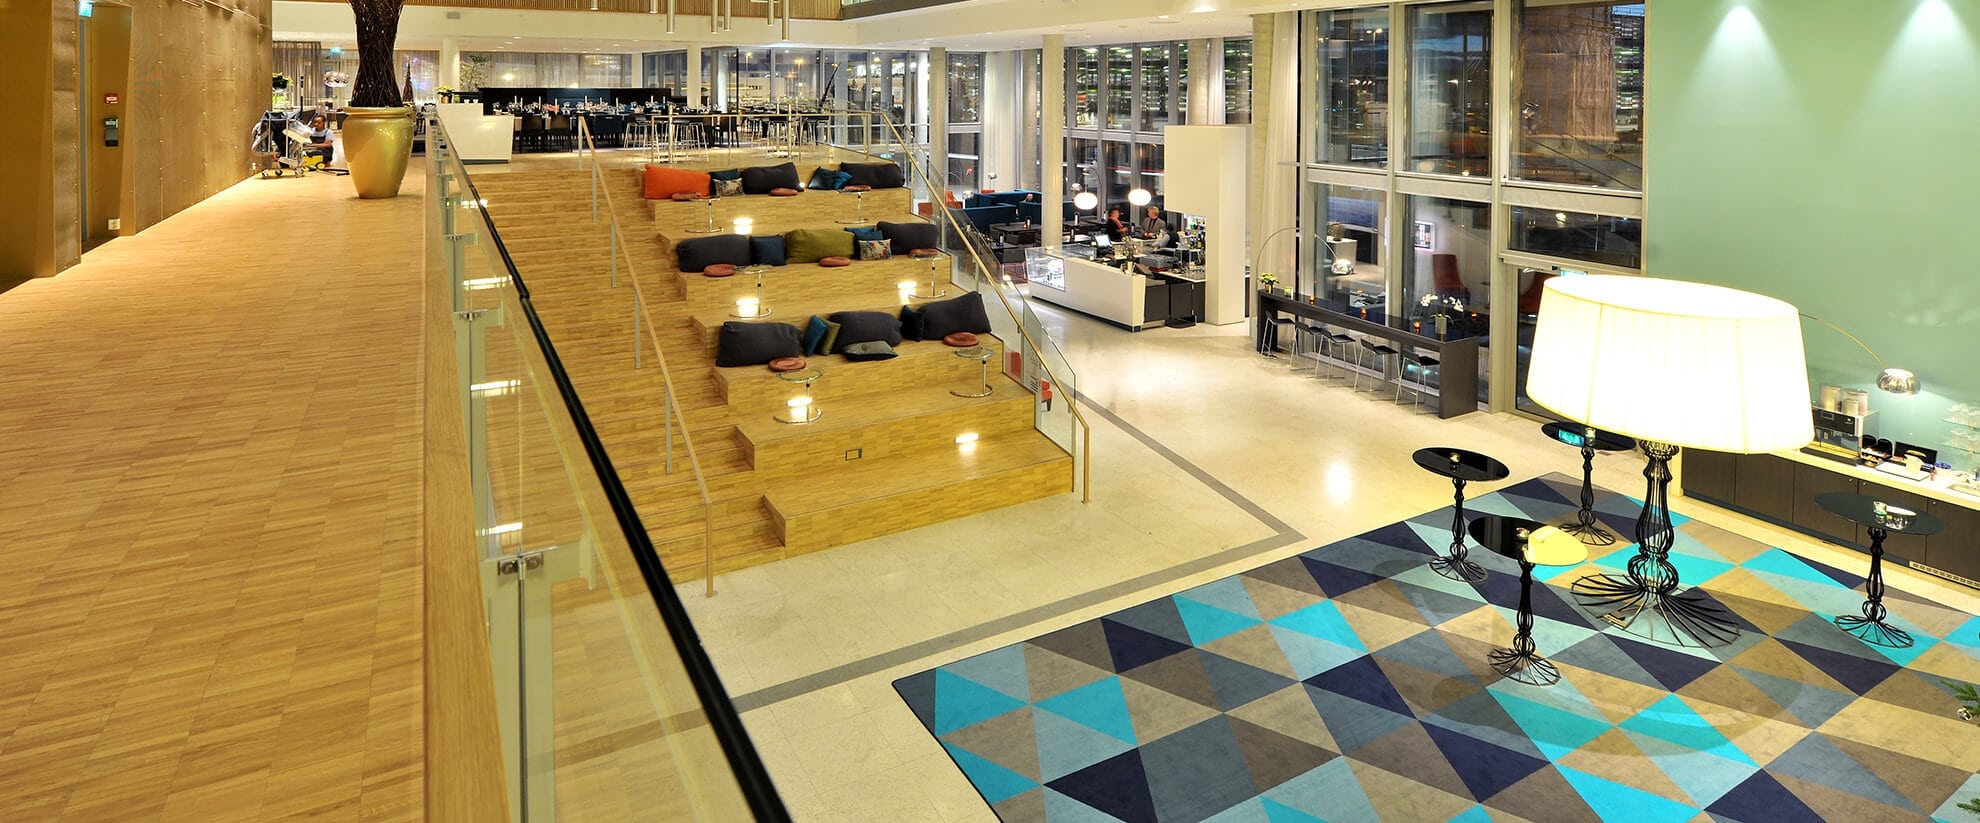 Dansk Wilton carpet solutions for hotel Scandic Stavanger Airport